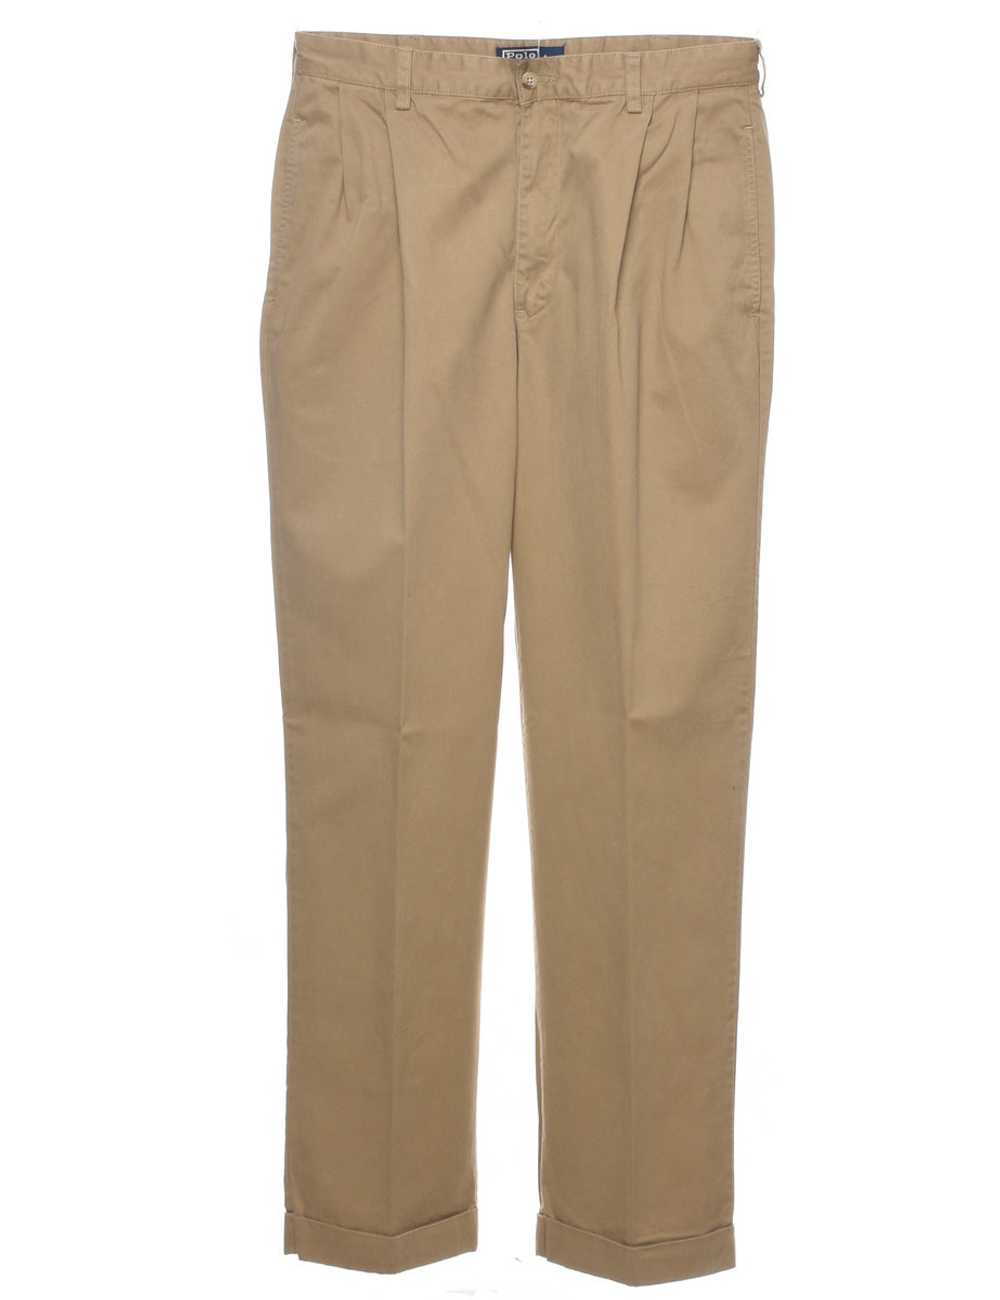 Ralph Lauren Trousers - W34 L32 - image 1